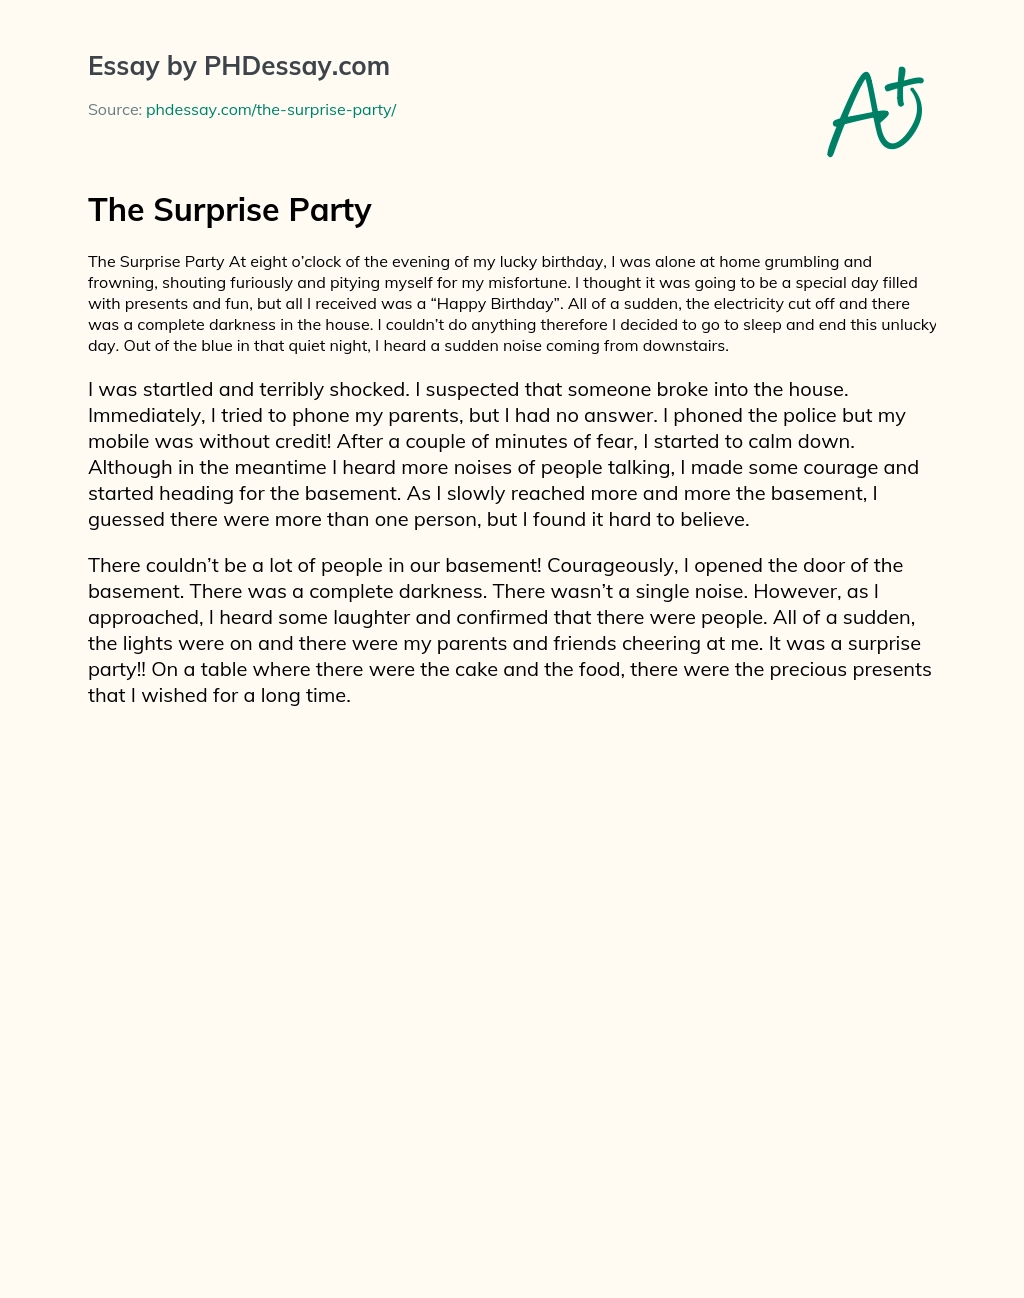 The Surprise Party essay